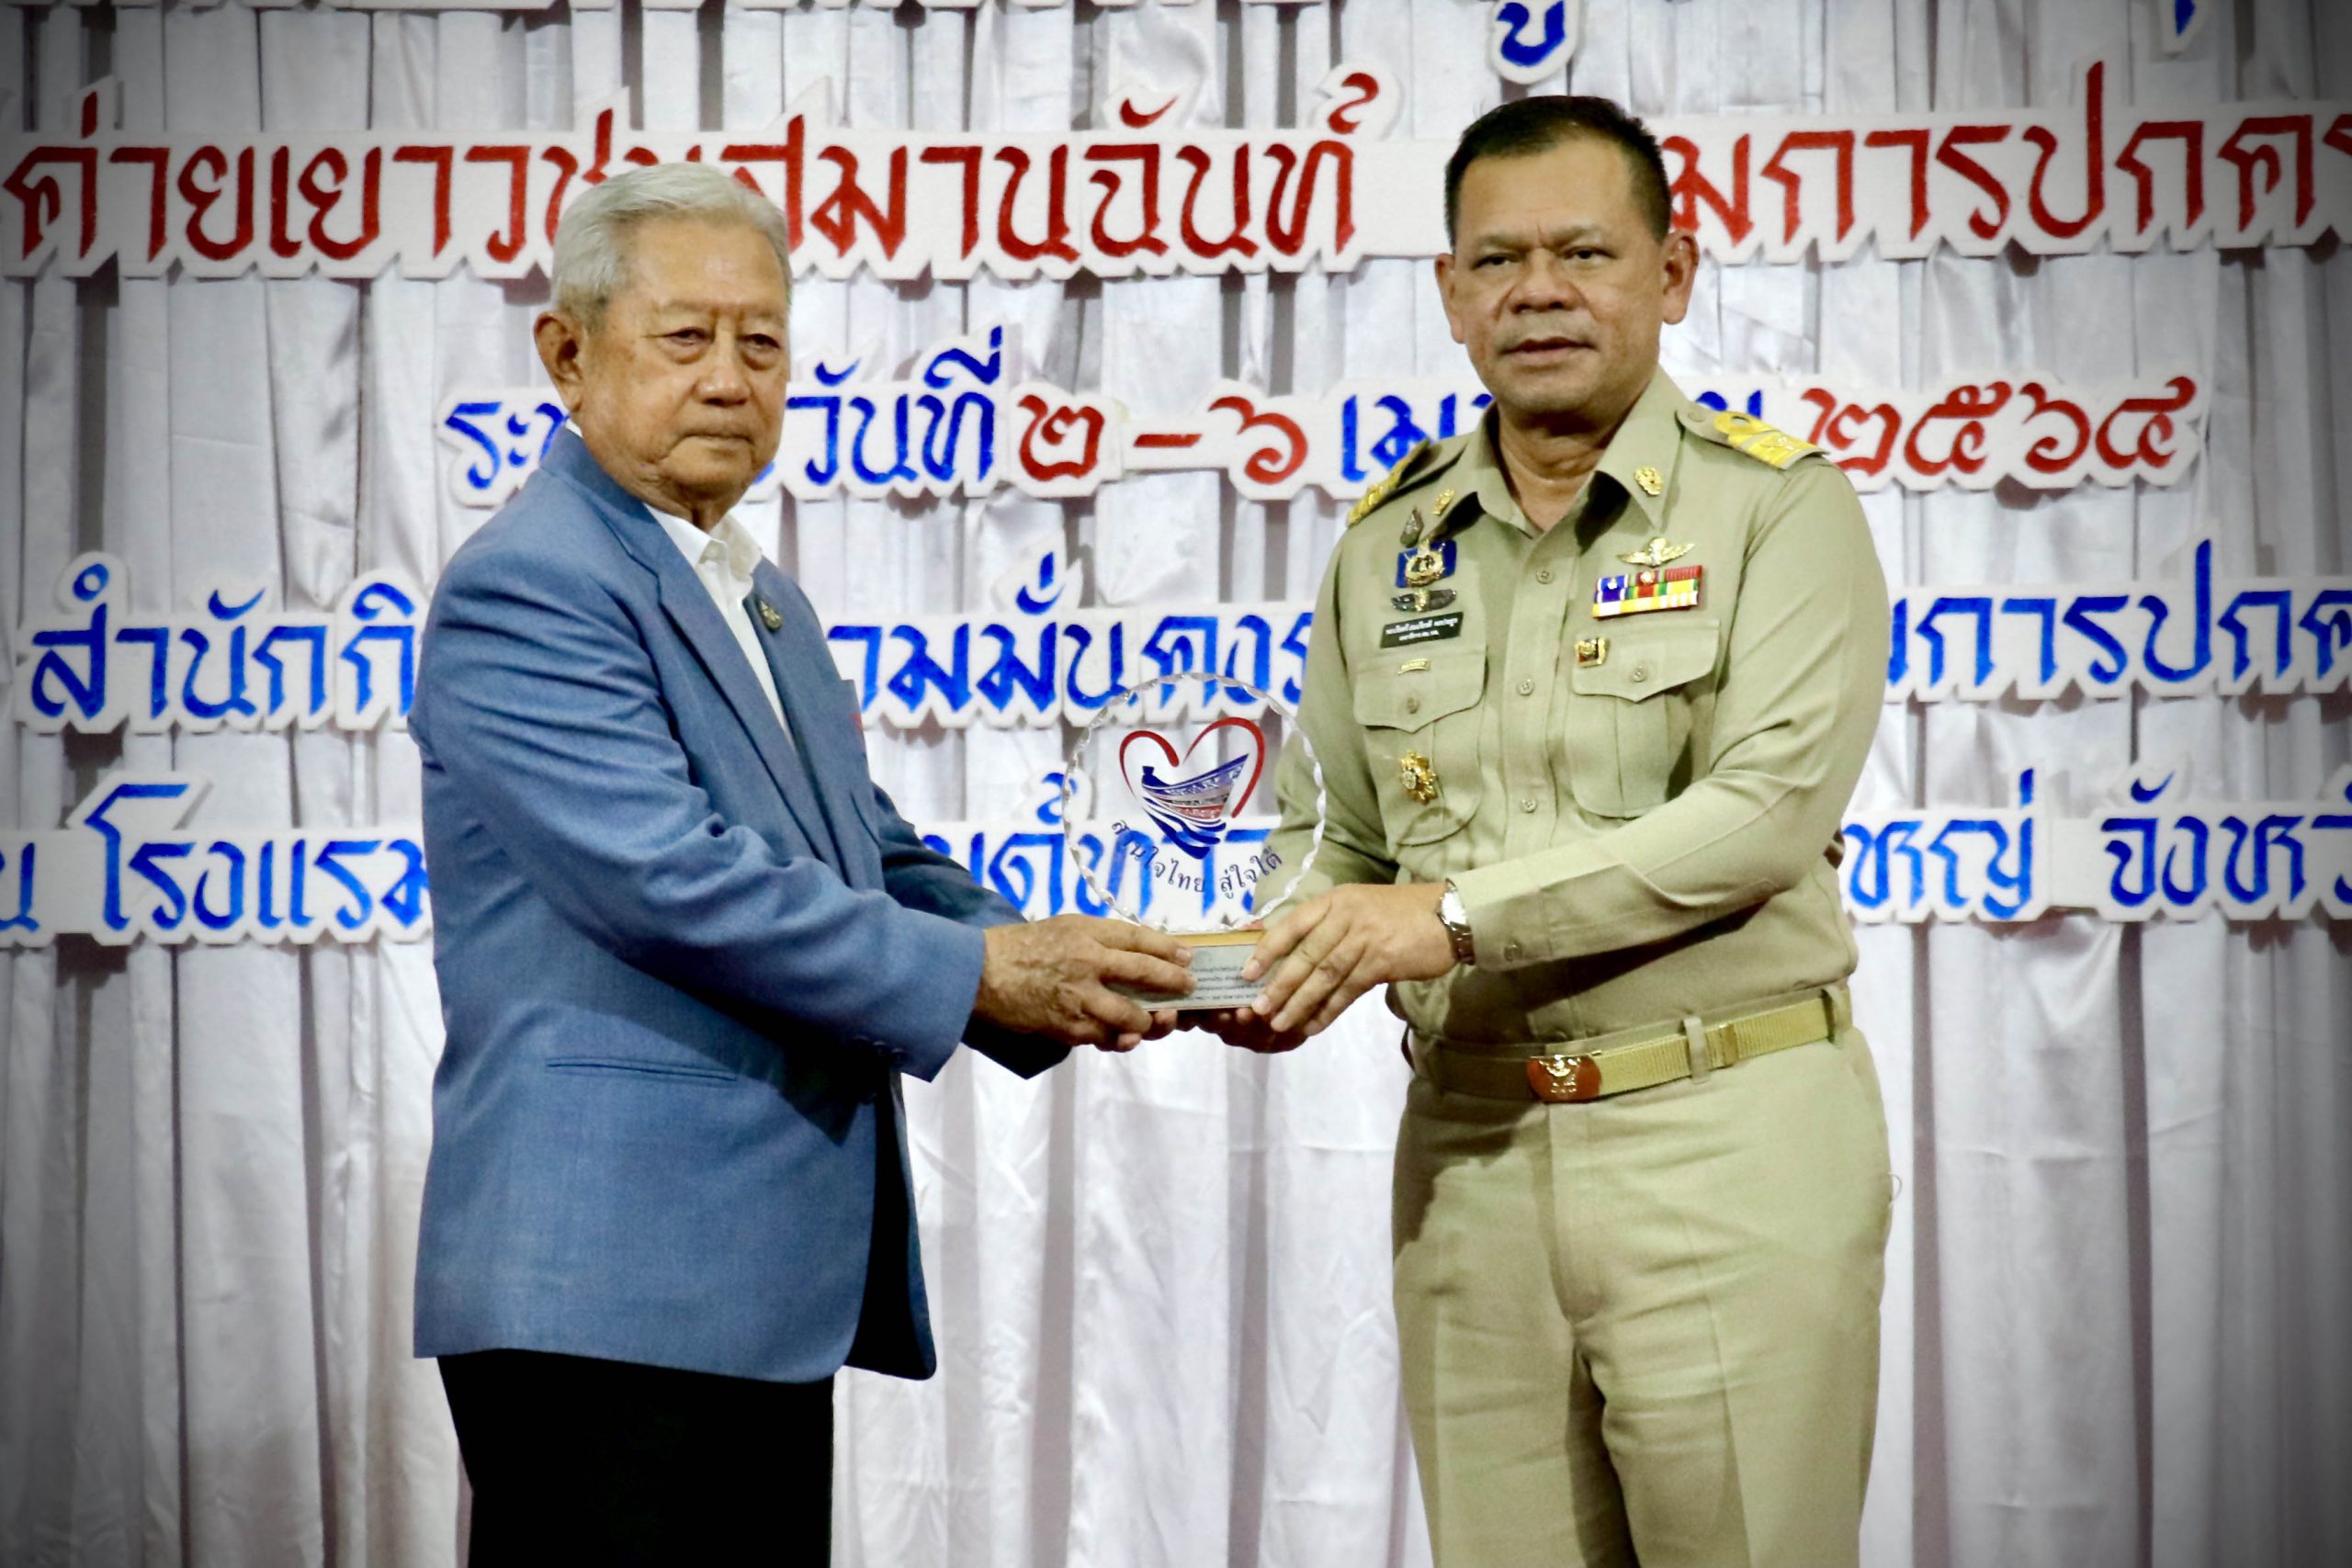 พลเอก สุรยุทธ์ จุลานนท์ องคมนตรี เปิดกิจกรรมปฐมนิเทศโครงการ “สานใจไทย สู่ใจใต้” รุ่นที่ 38